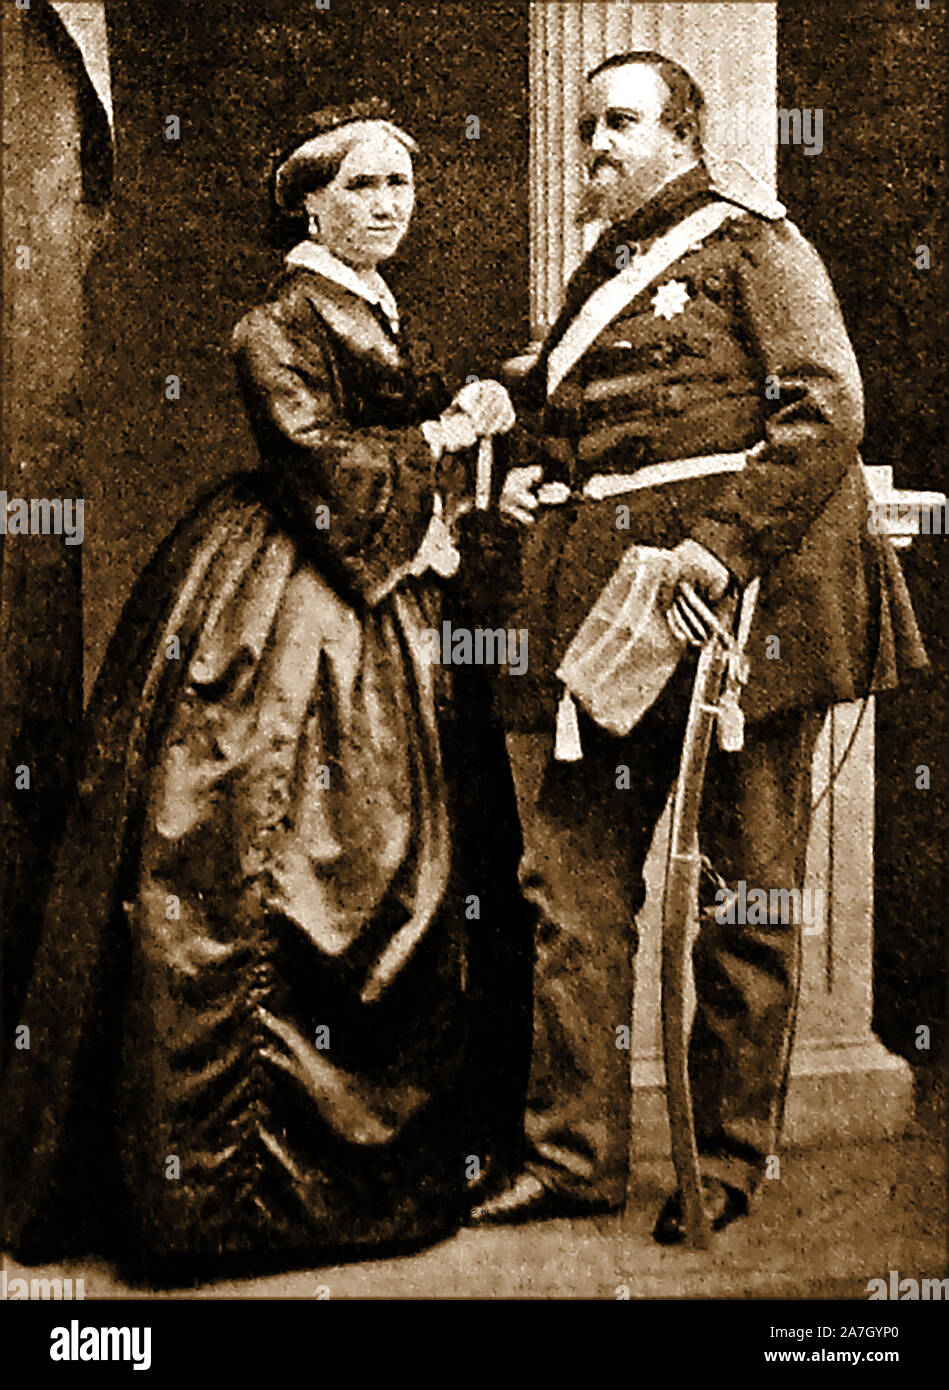 Un portrait du roi Frédéric VII de Danemark (Frederik Carl Christian 1808-1863) avec son épouse Louisa Christina Rasmussen, qu'il a créée en 1850 Danner Landgravine ( Lensgrevinde Danner) elle était autrefois une modiste, danseur de ballet et la maîtresse présumée du roi Banque D'Images